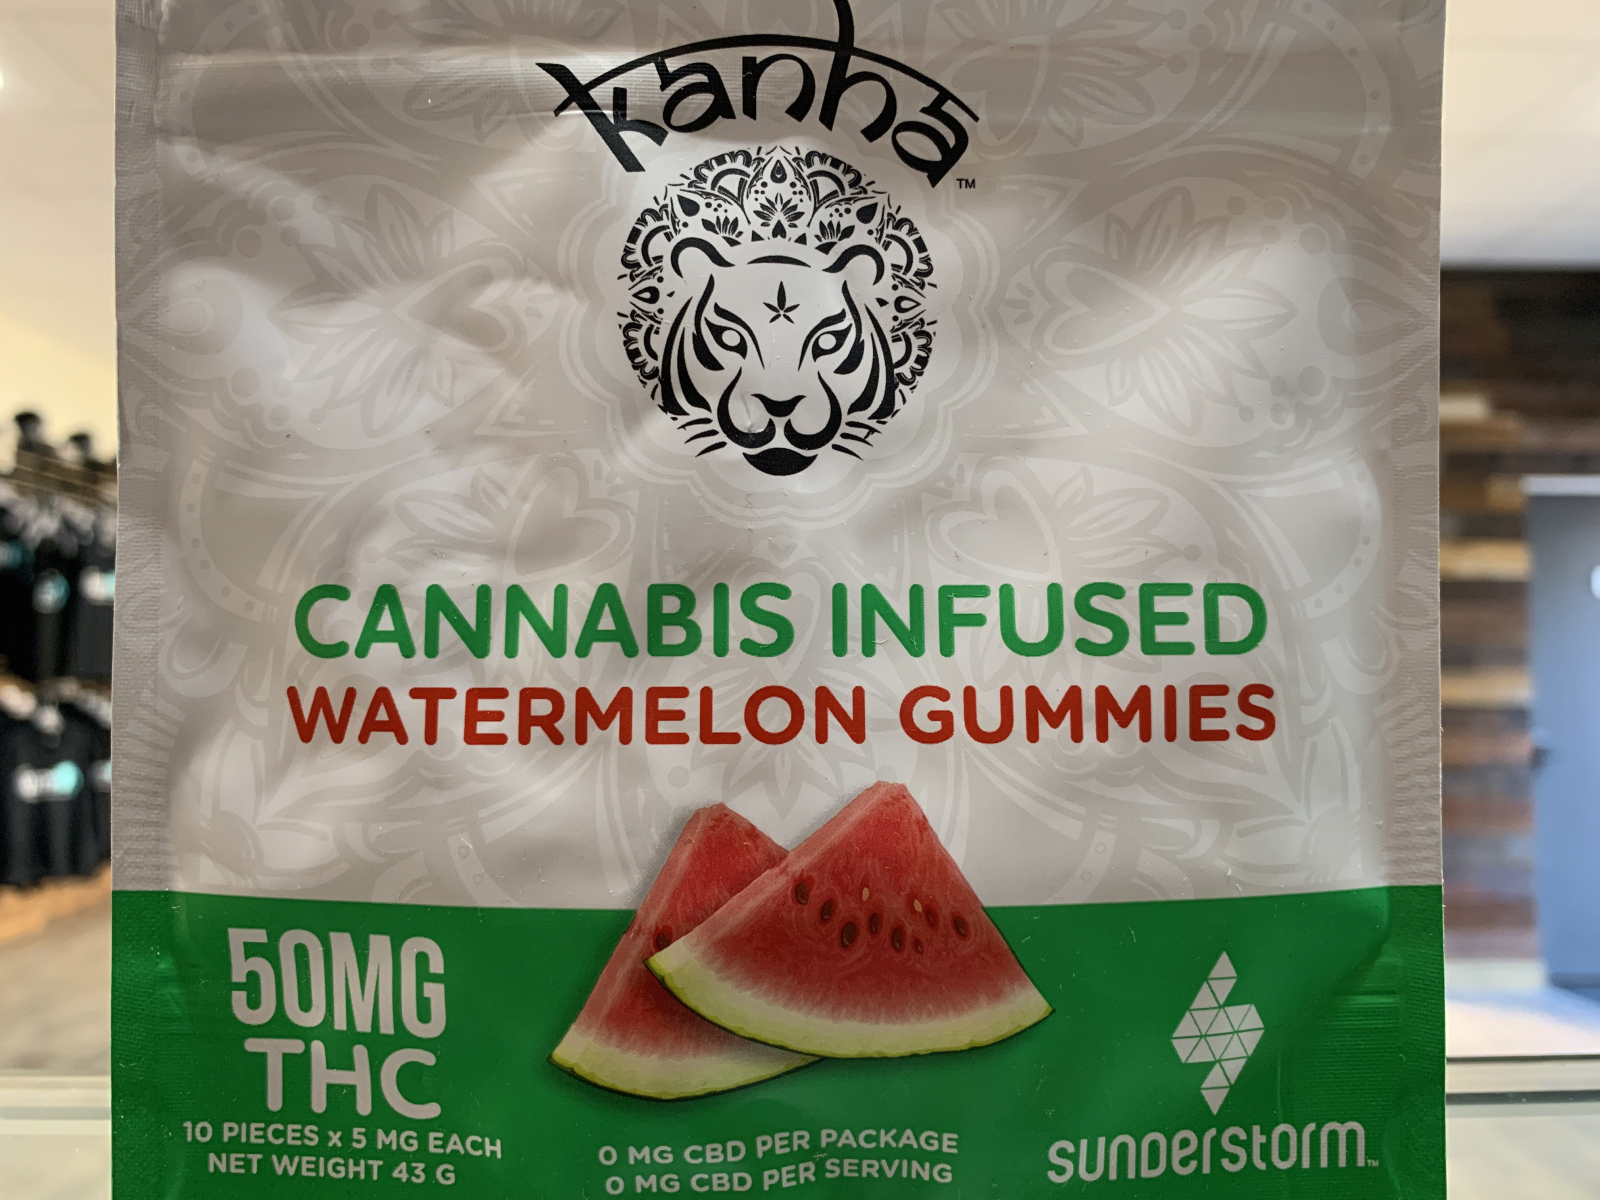 Kanha watermelon gummies 50 mg